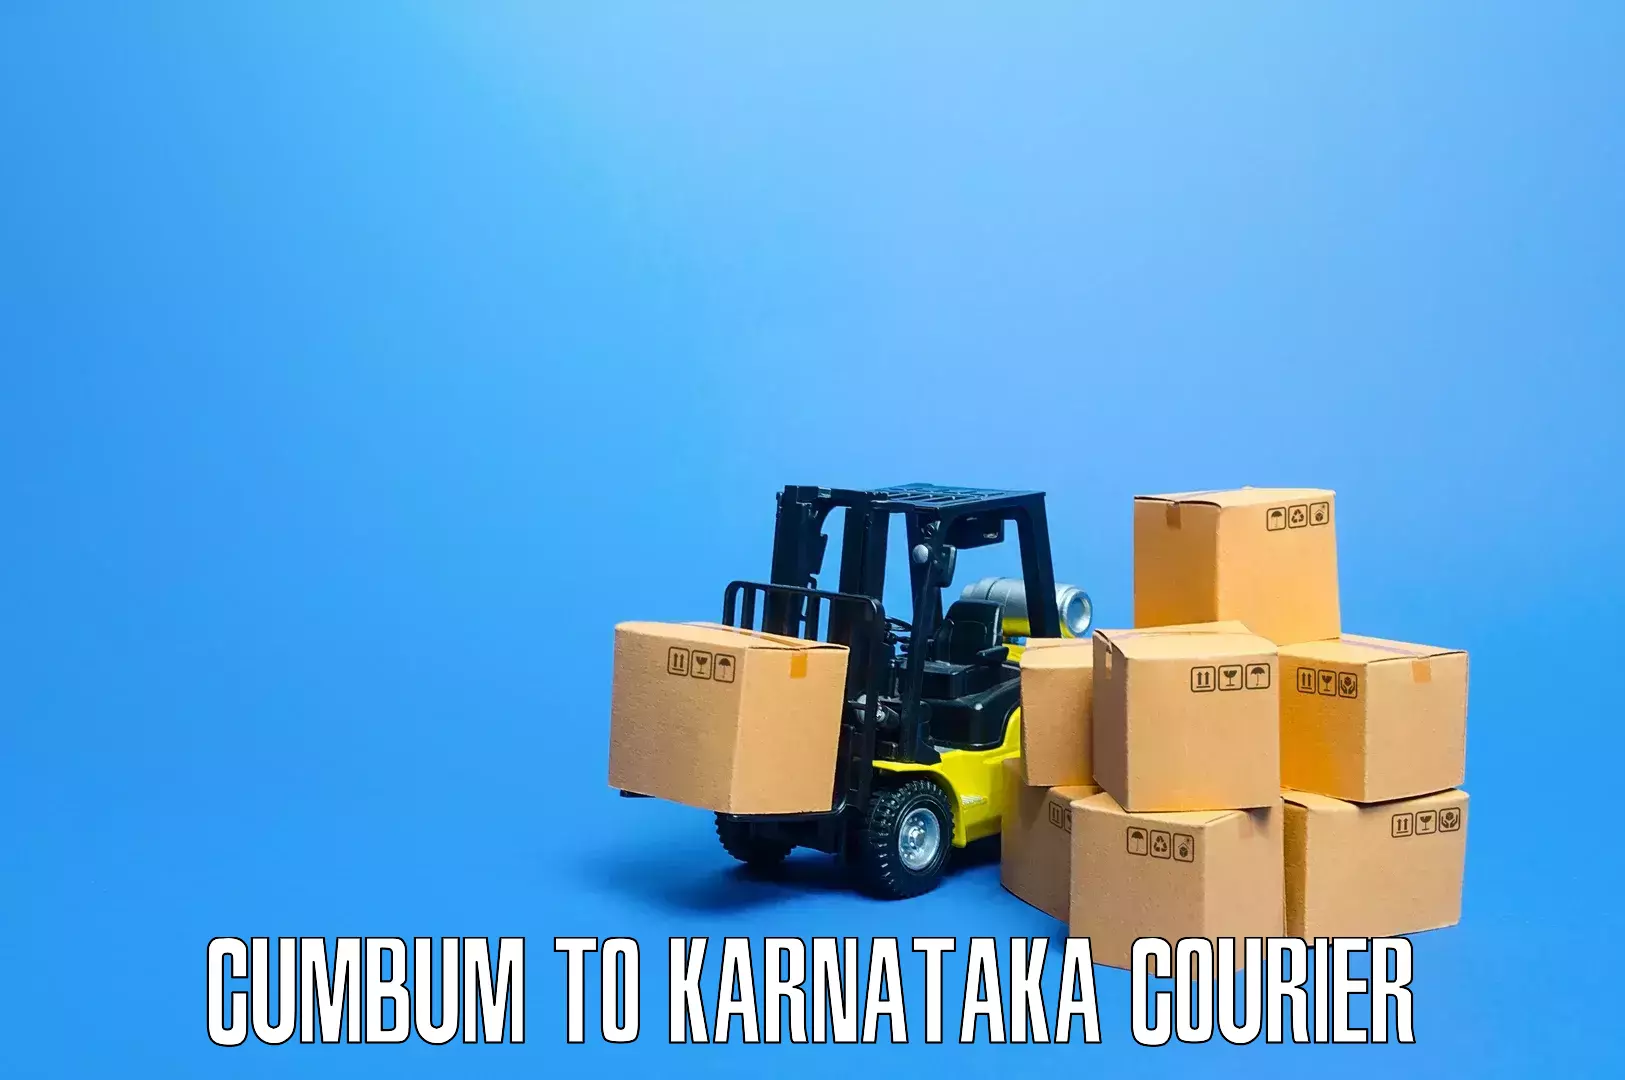 Furniture shipping services Cumbum to Karnataka